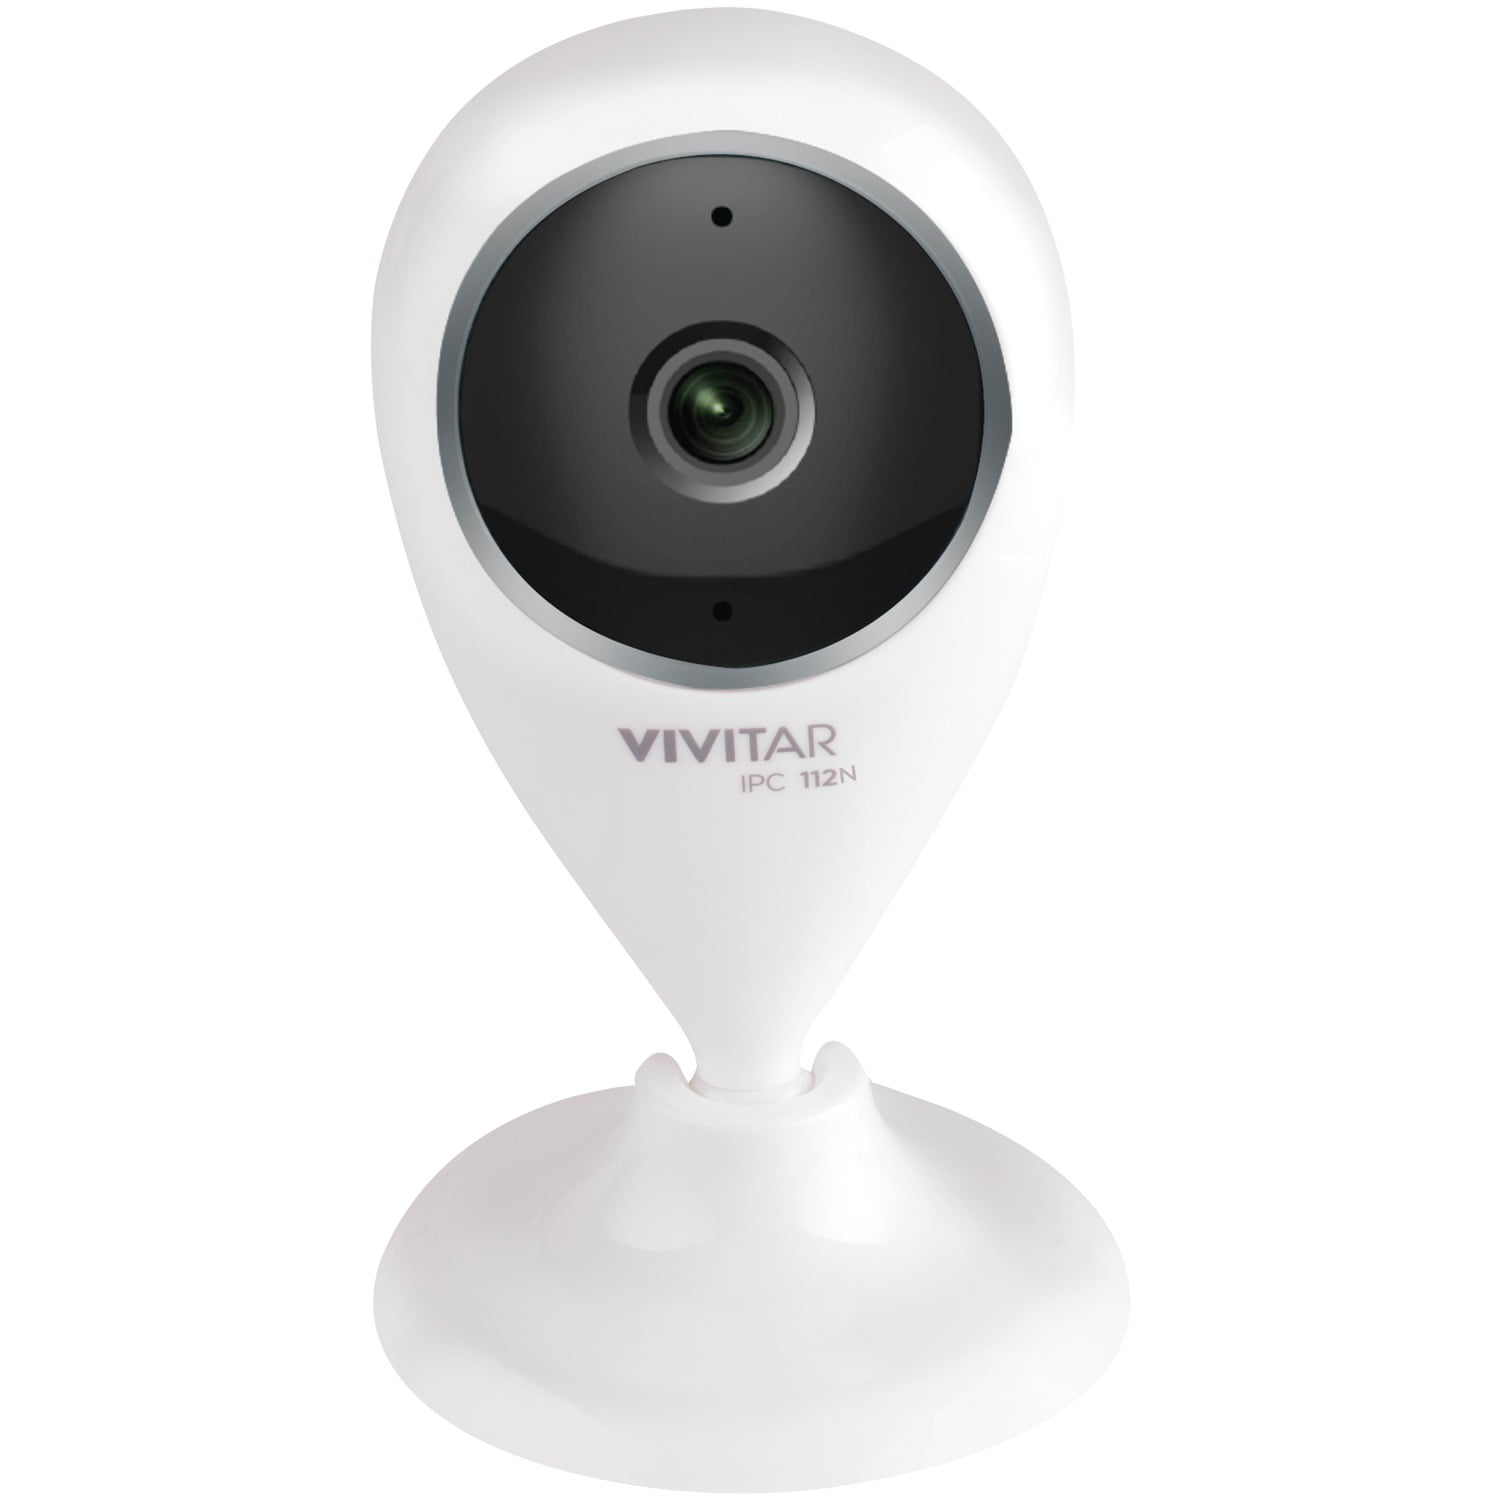 vivitar smart security wifi cam